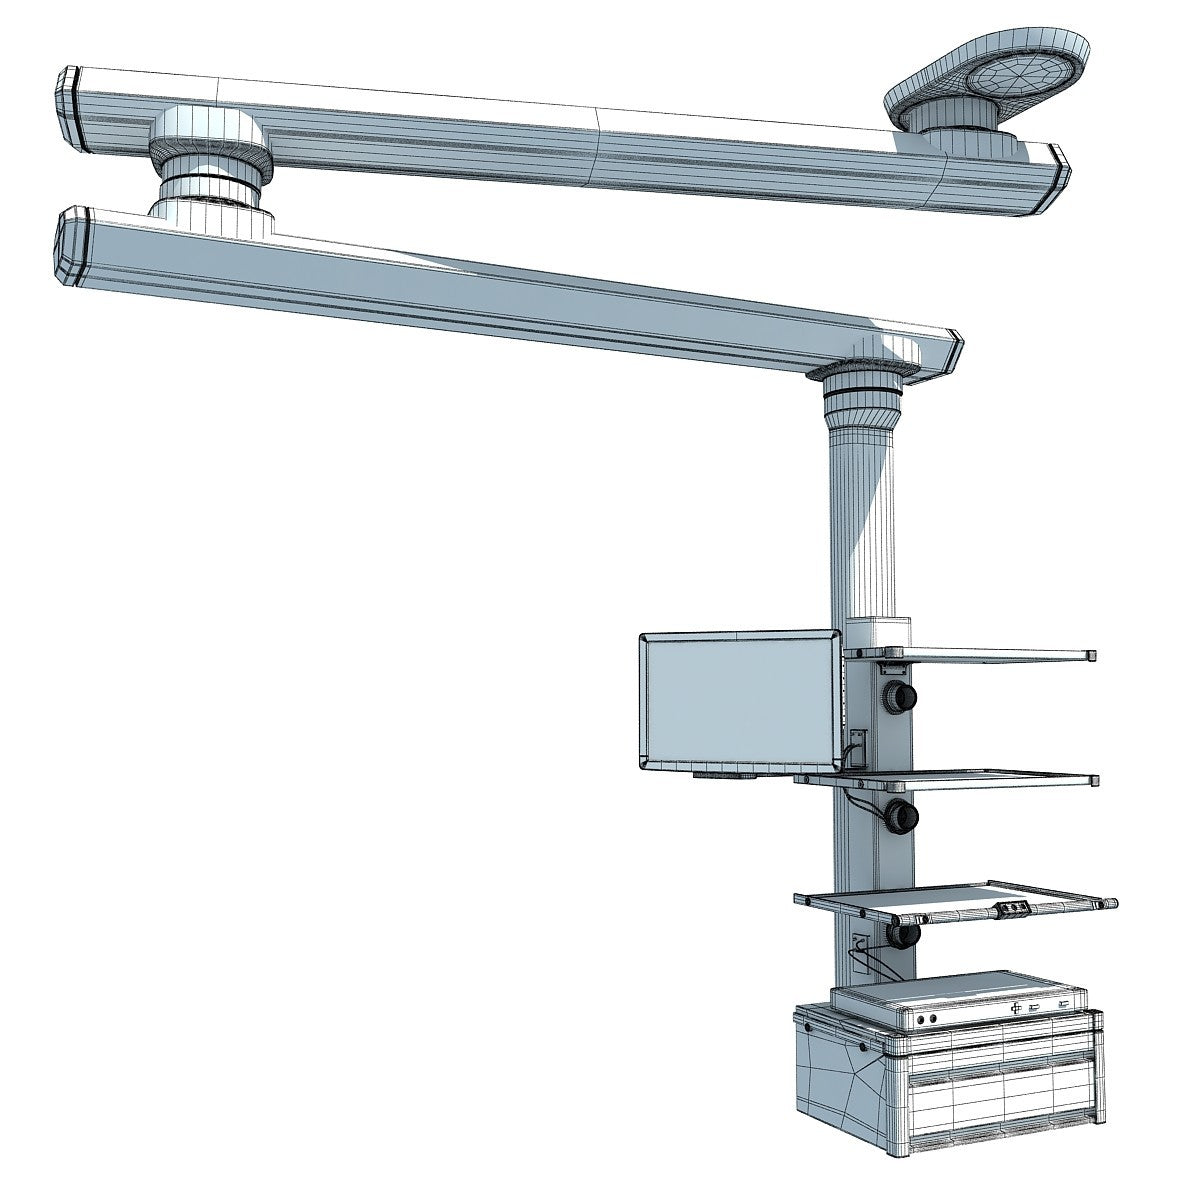 Hospital Medical Equipment 3D Models